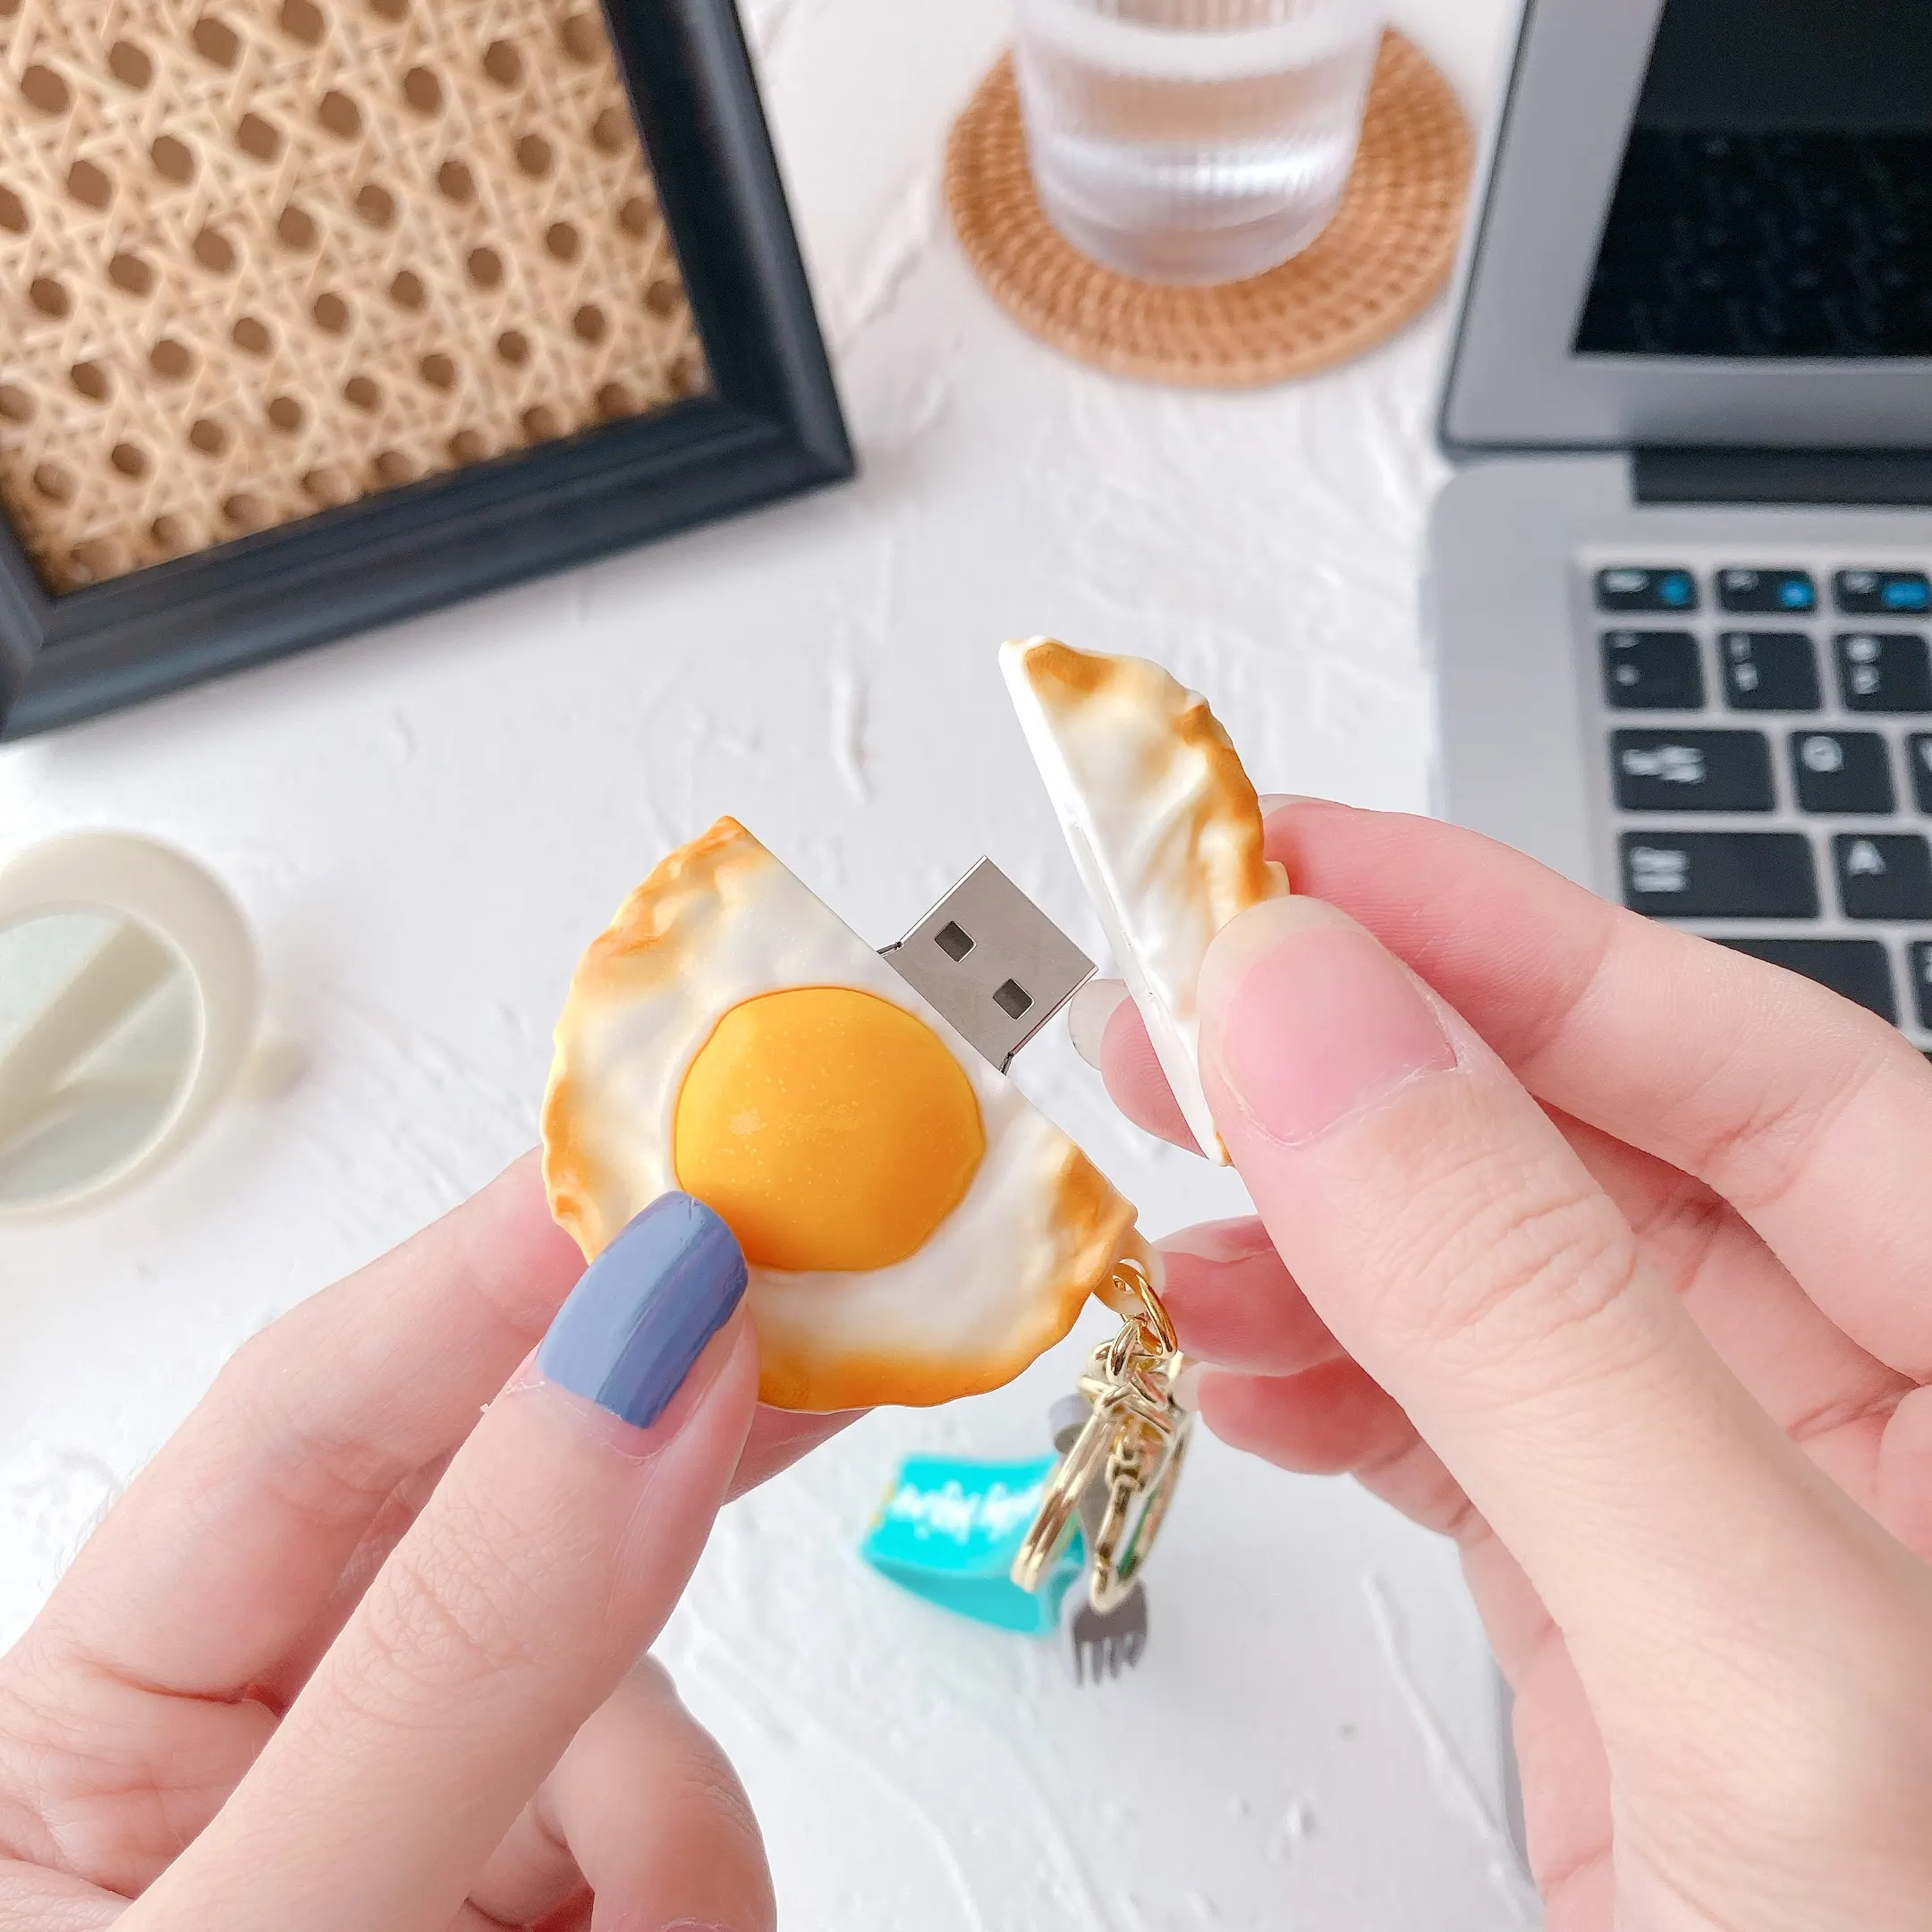 राल विशेष यथार्थवादी ज्वलंत निगम व्यापार उपहार आइटम 3D तले हुए अंडे शैली कस्टम डिजाइन अद्वितीय आकार 8GB यूएसबी फ्लैश ड्राइव